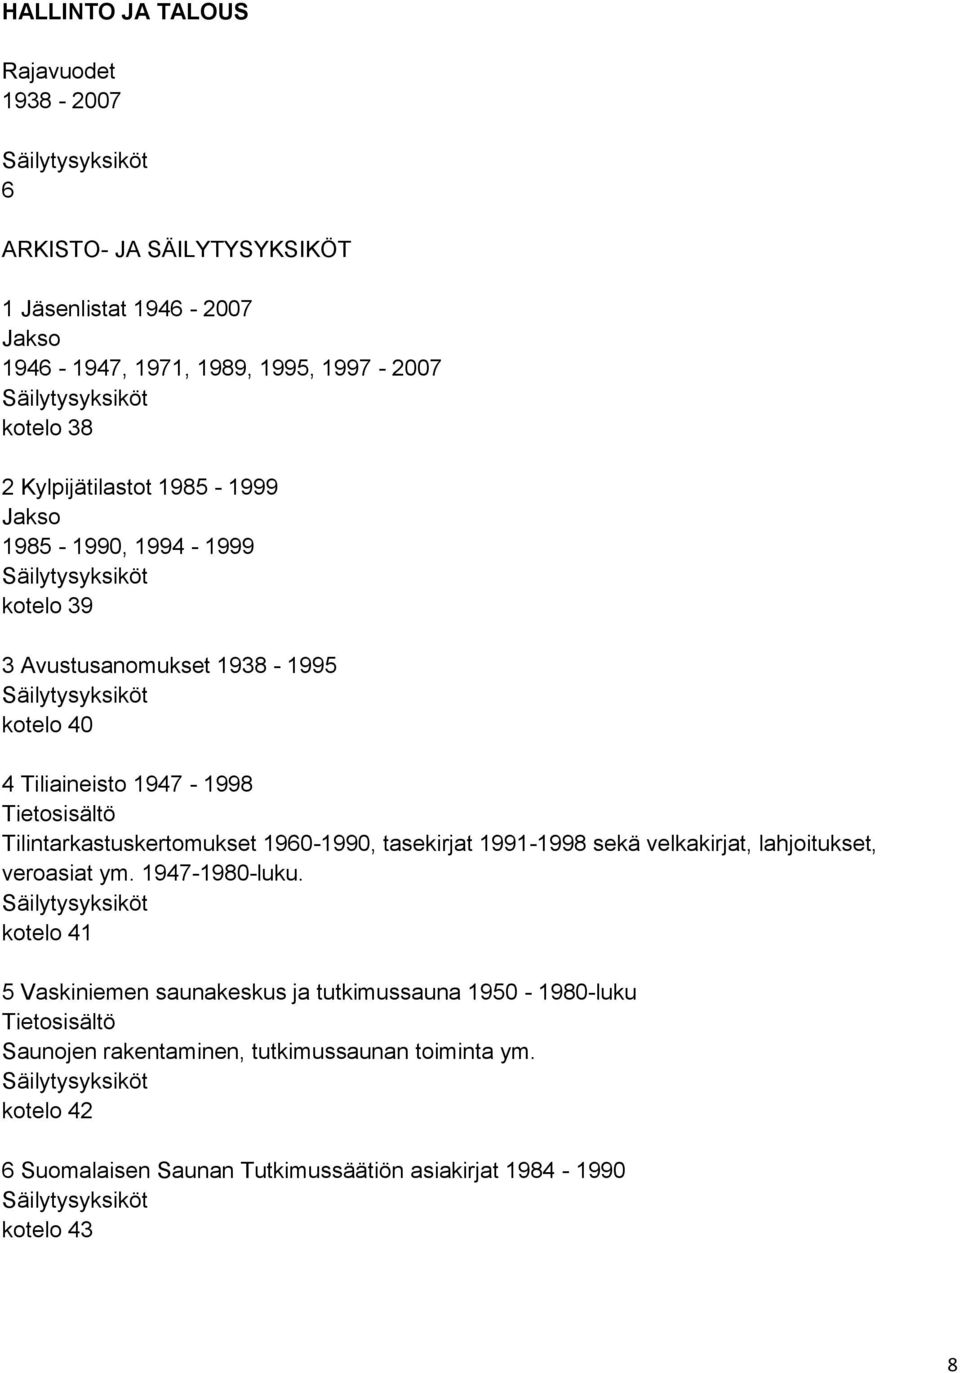 Tilintarkastuskertomukset 1960-1990, tasekirjat 1991-1998 sekä velkakirjat, lahjoitukset, veroasiat ym. 1947-1980-luku.